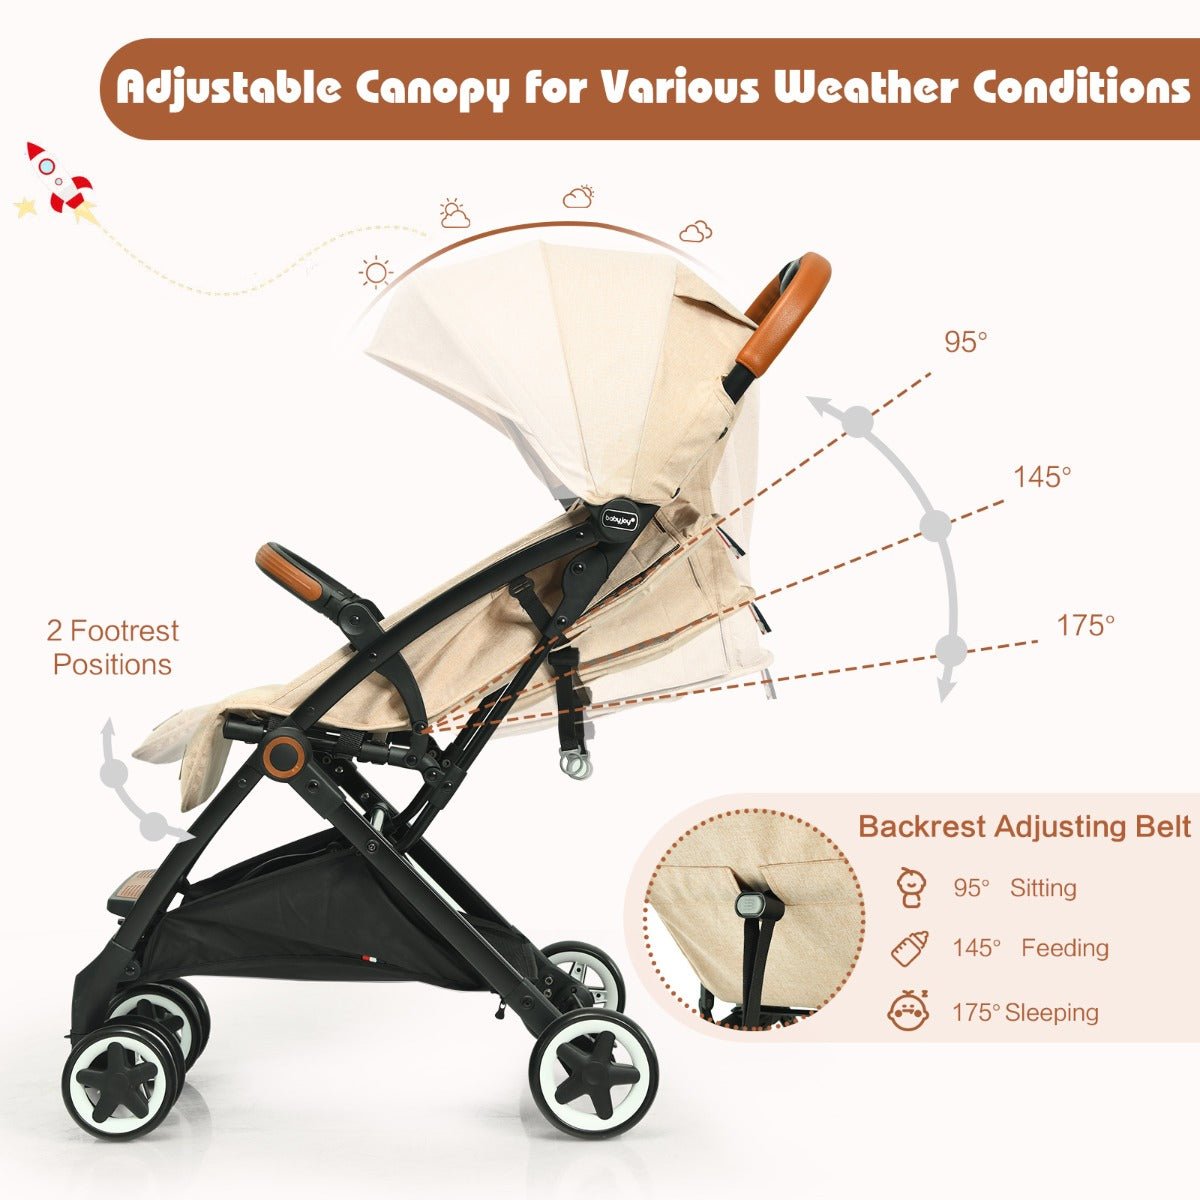 Versatile Strolling in Beige: Adjustable for Baby's Comfort